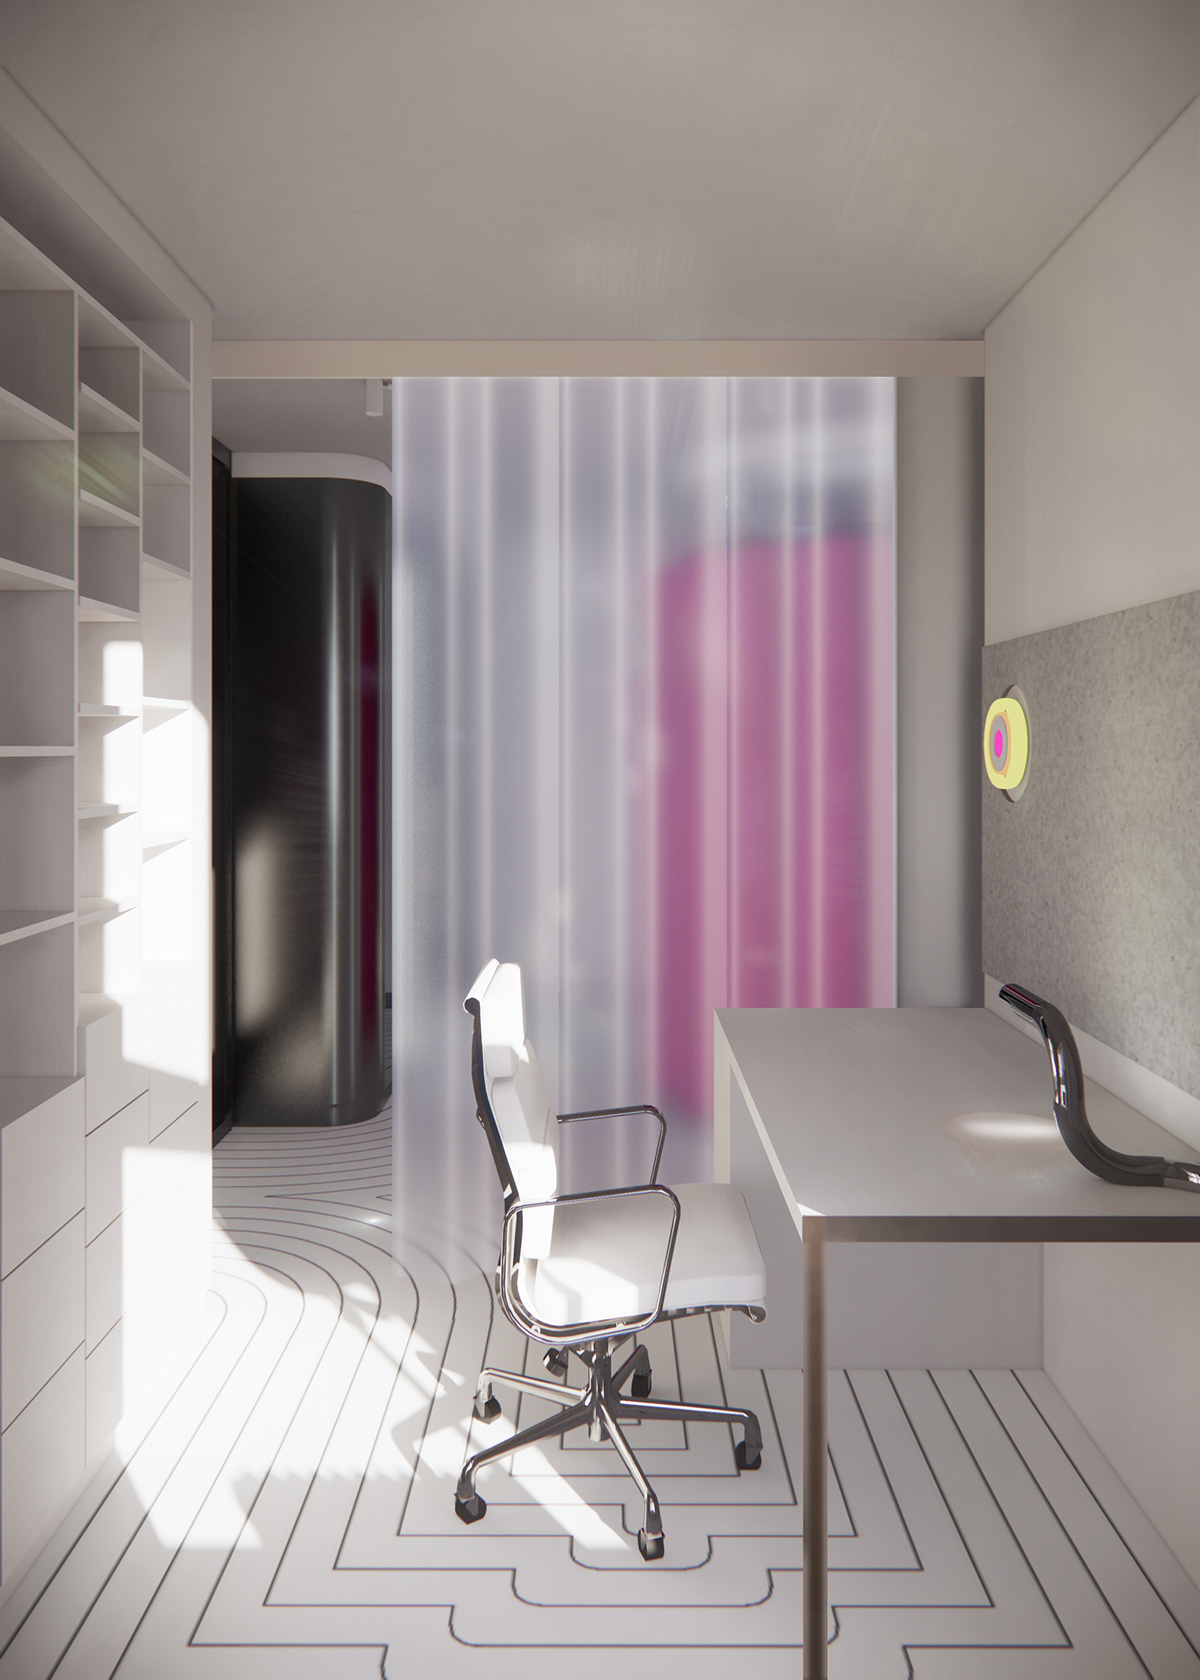 Interior curtain closet interior design  modern graphical neon flat elegant design